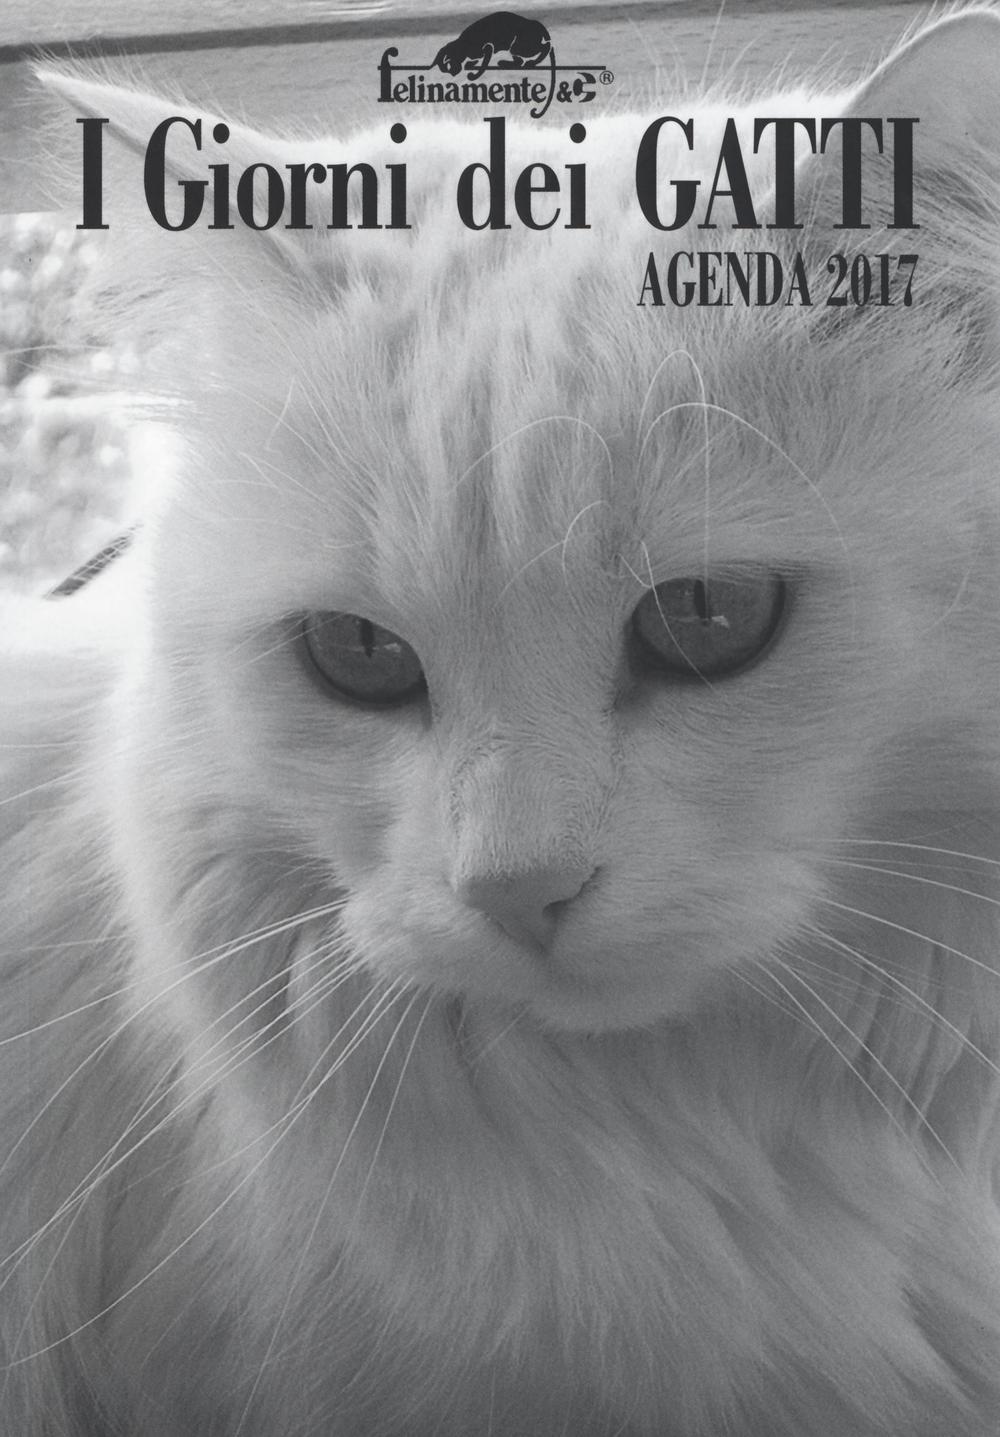 I giorni dei gatti. Agenda 2017